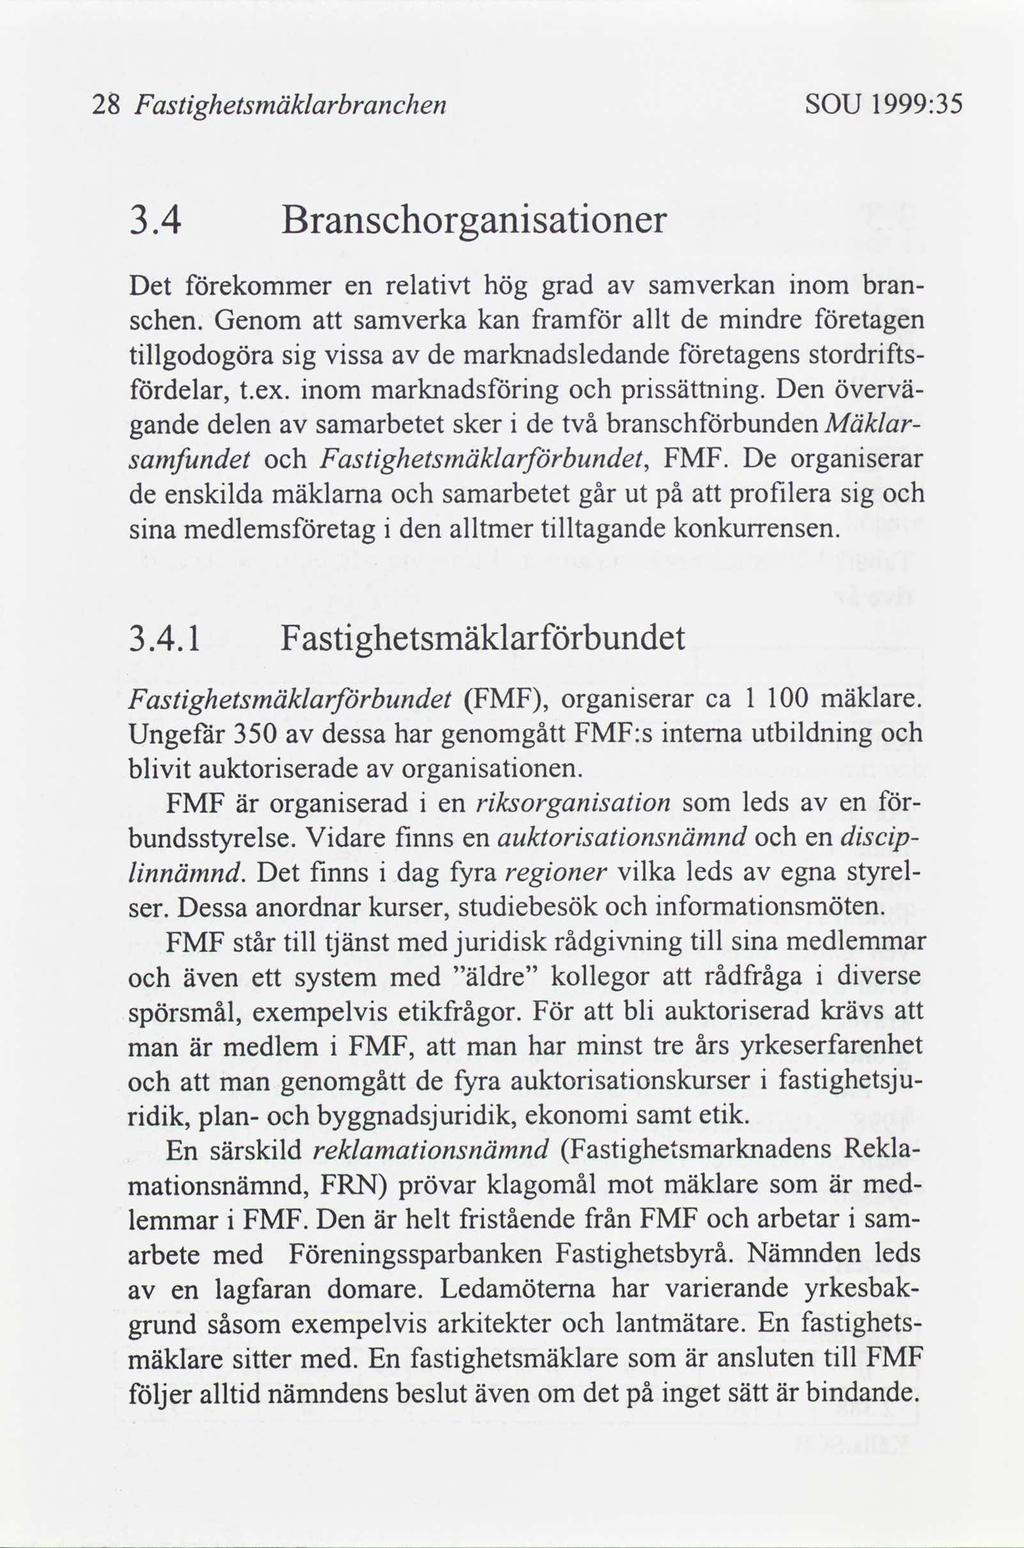 28 astghetsmäklarbranchen SOU 1999:35 F 3.4 Branschorgansatoner Det ekommer en relatvt hög grad samverkan nom branschen.